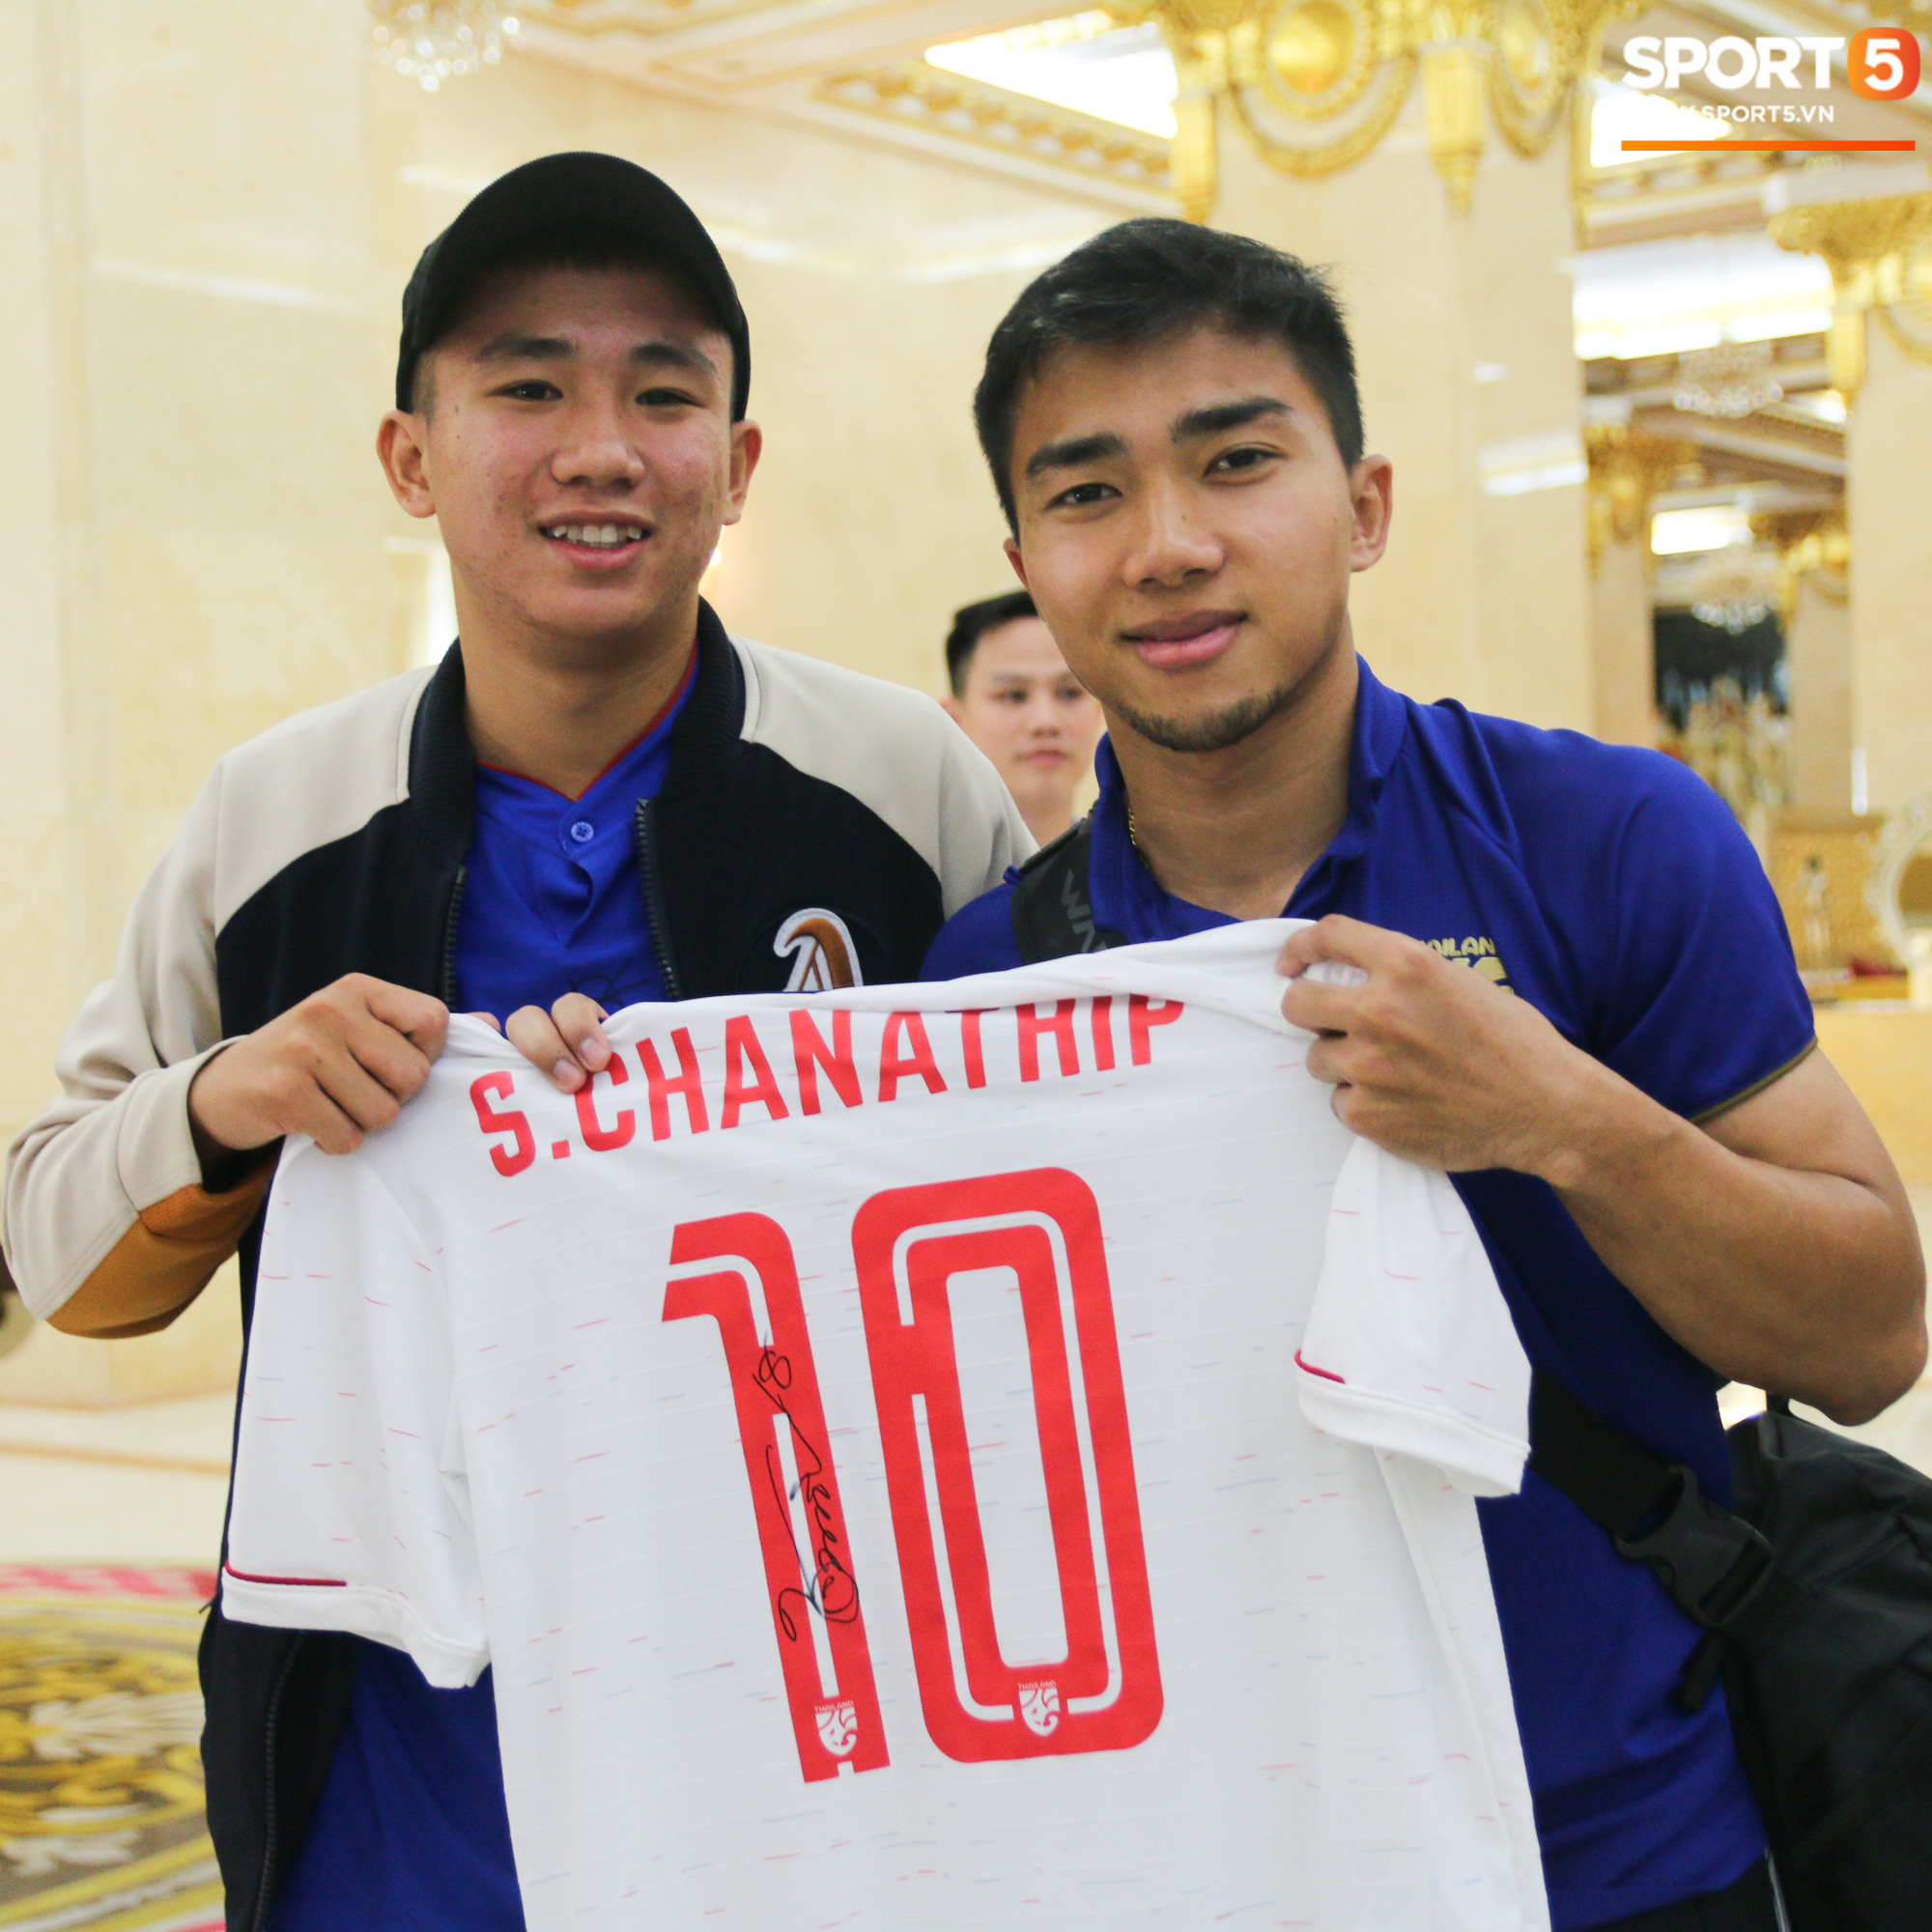 Về khách sạn lúc 23h, Messi Thái Chanathip vẫn miệt mài ký tặng 7 chiếc áo đấu dành riêng cho chàng trai Việt hâm mộ cuồng nhiệt - Ảnh 2.